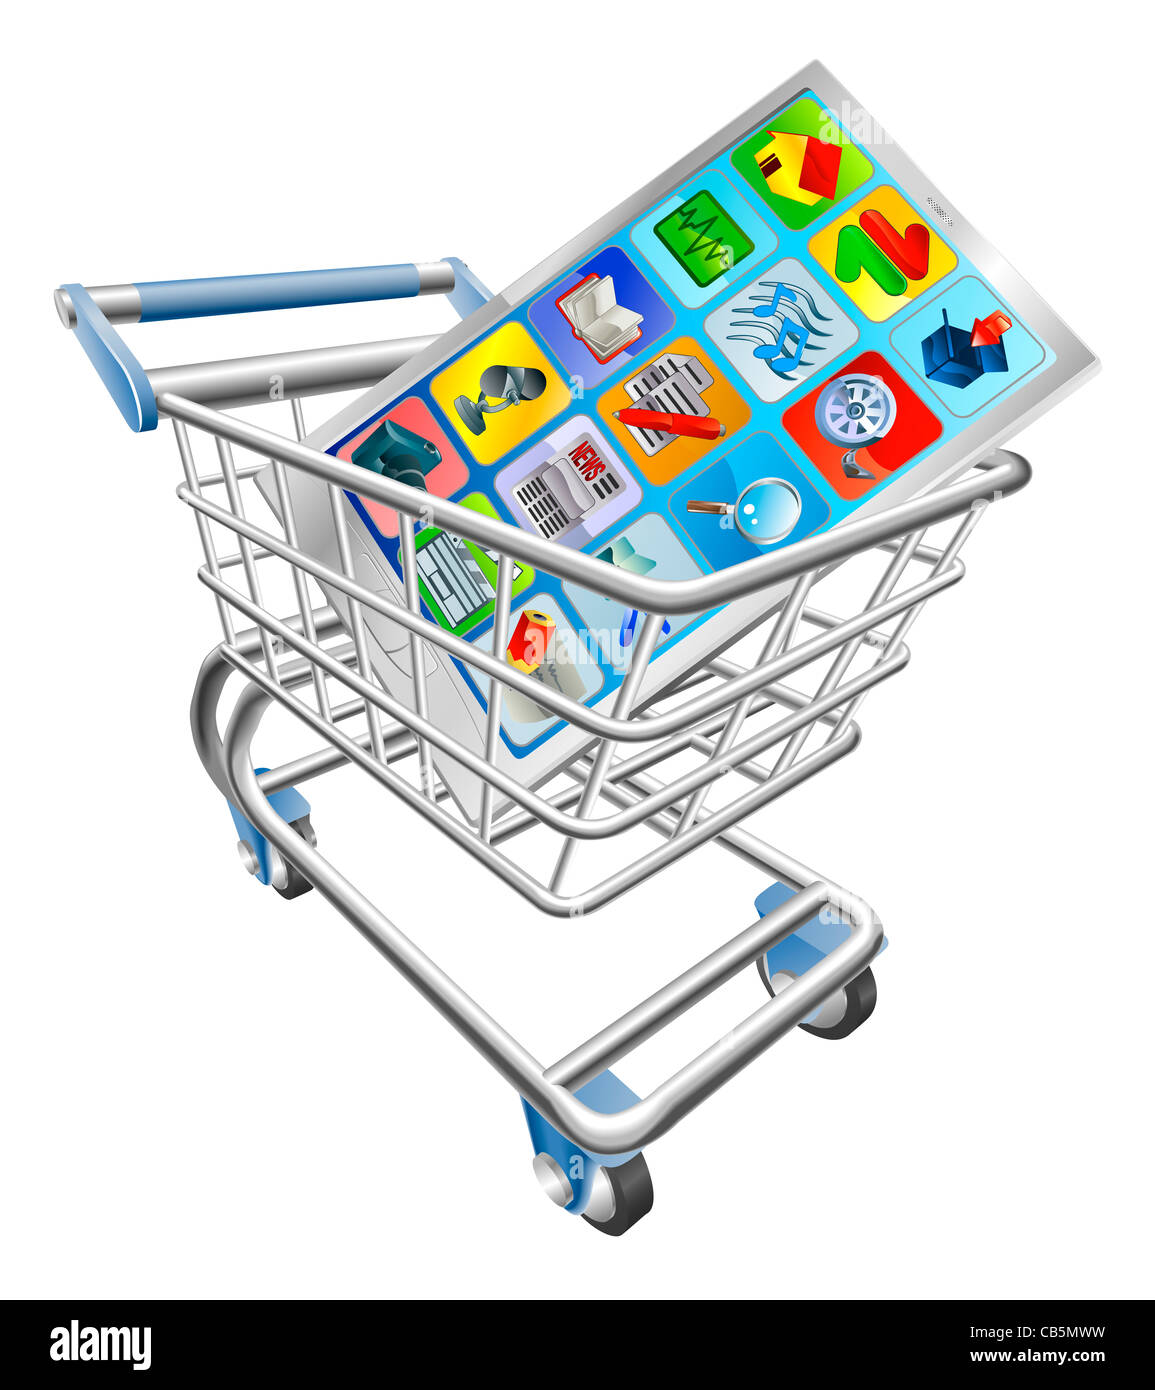 Une illustration d'une smart mobile phone or tablet PC dans votre panier trolley Banque D'Images